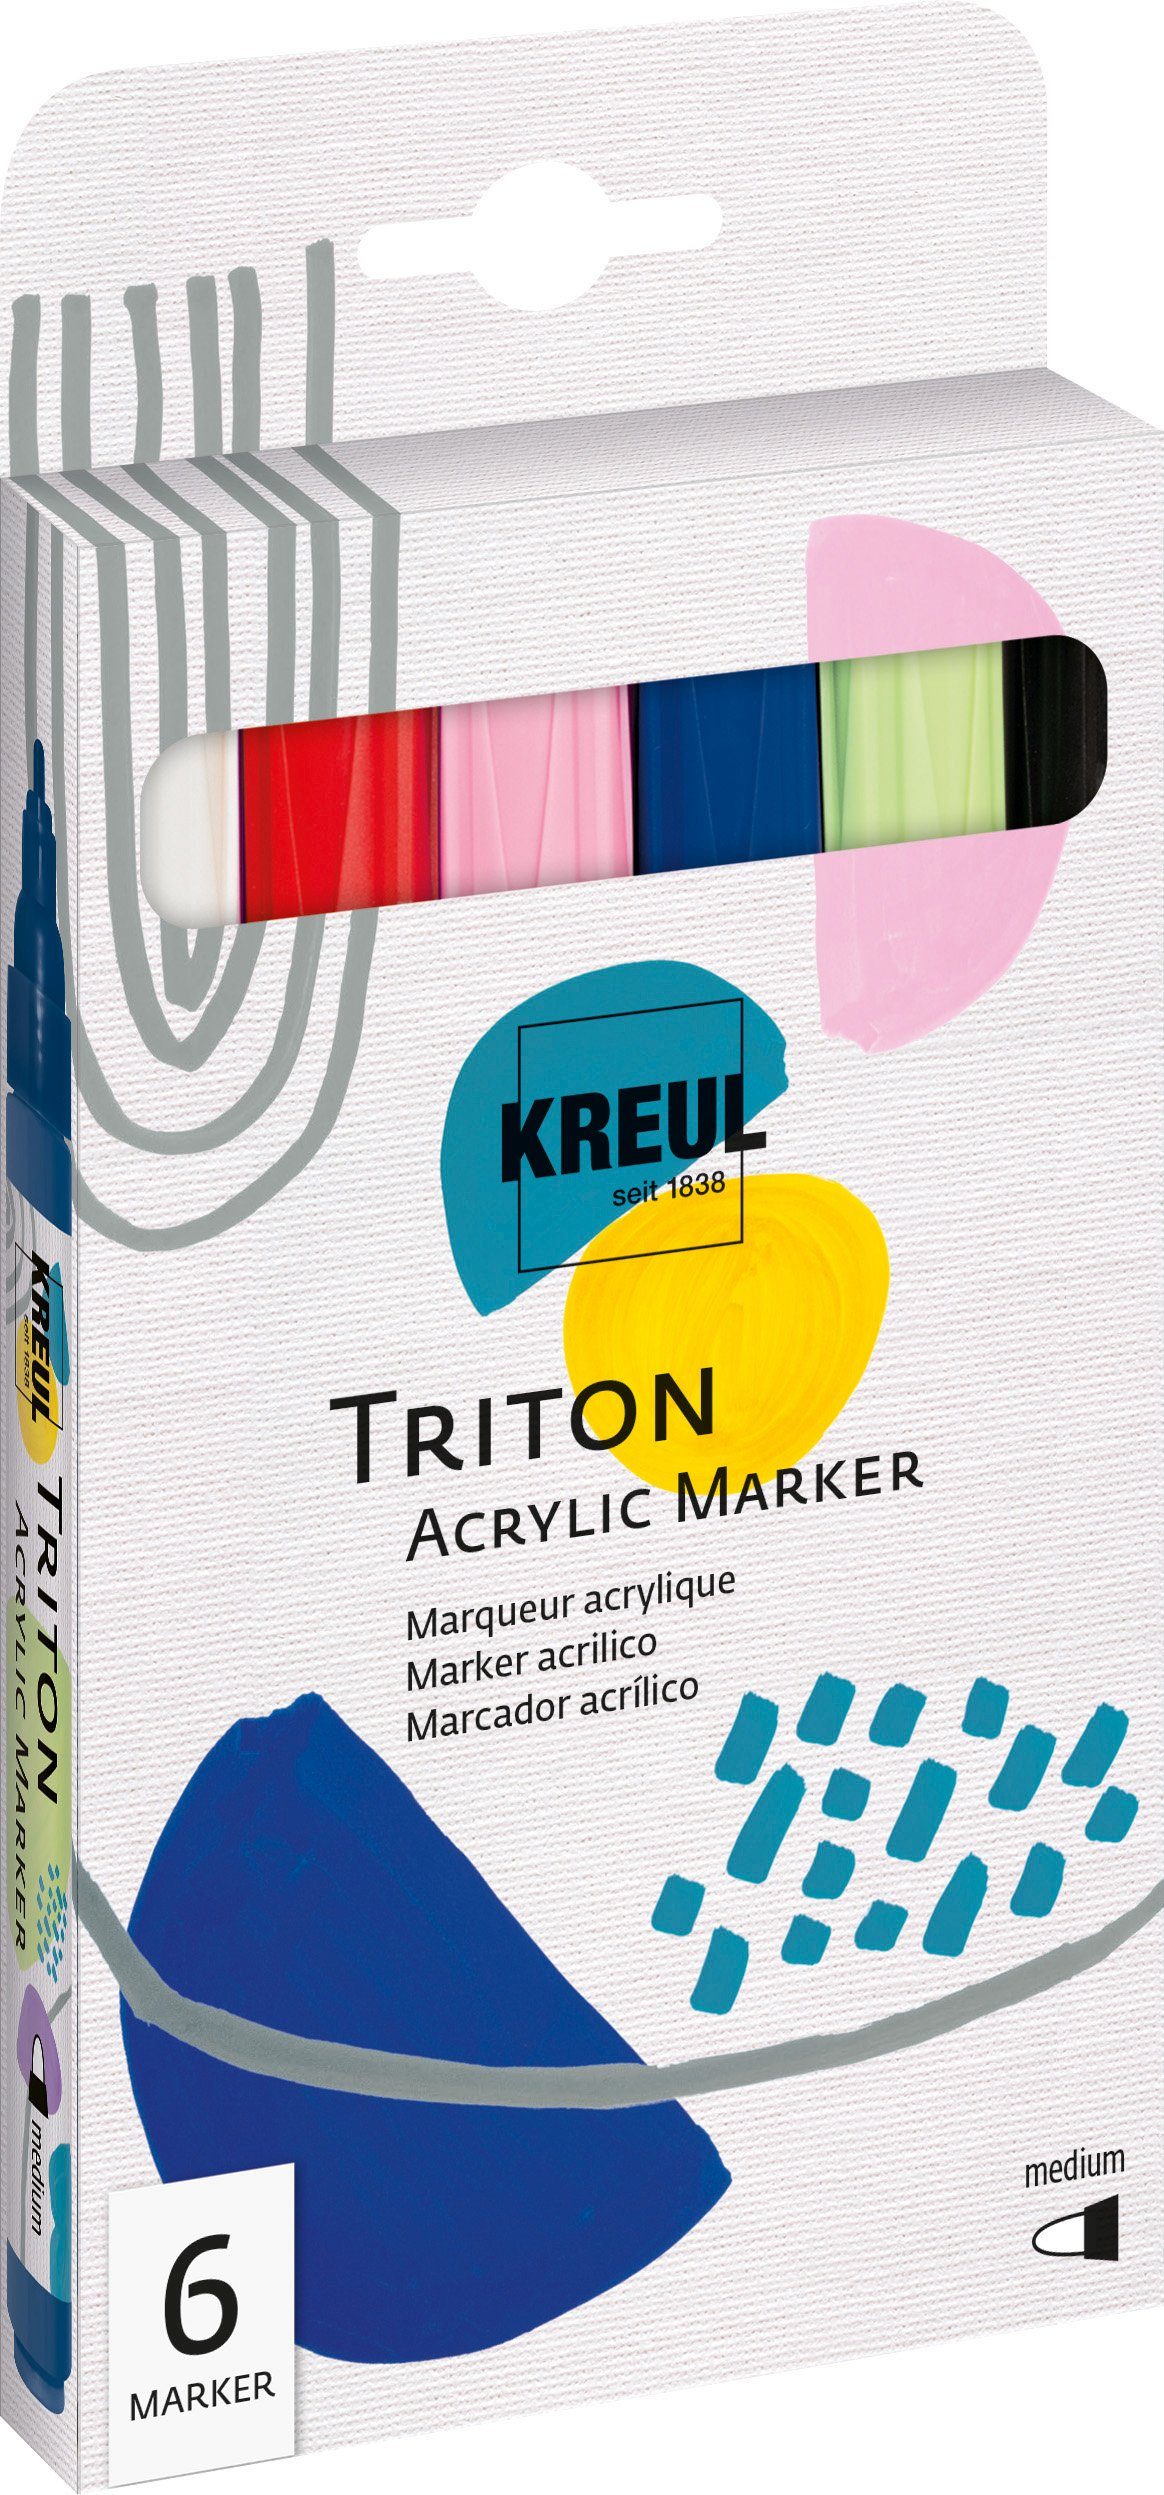 Triton Marker Kreul Medium Acrylic Marker